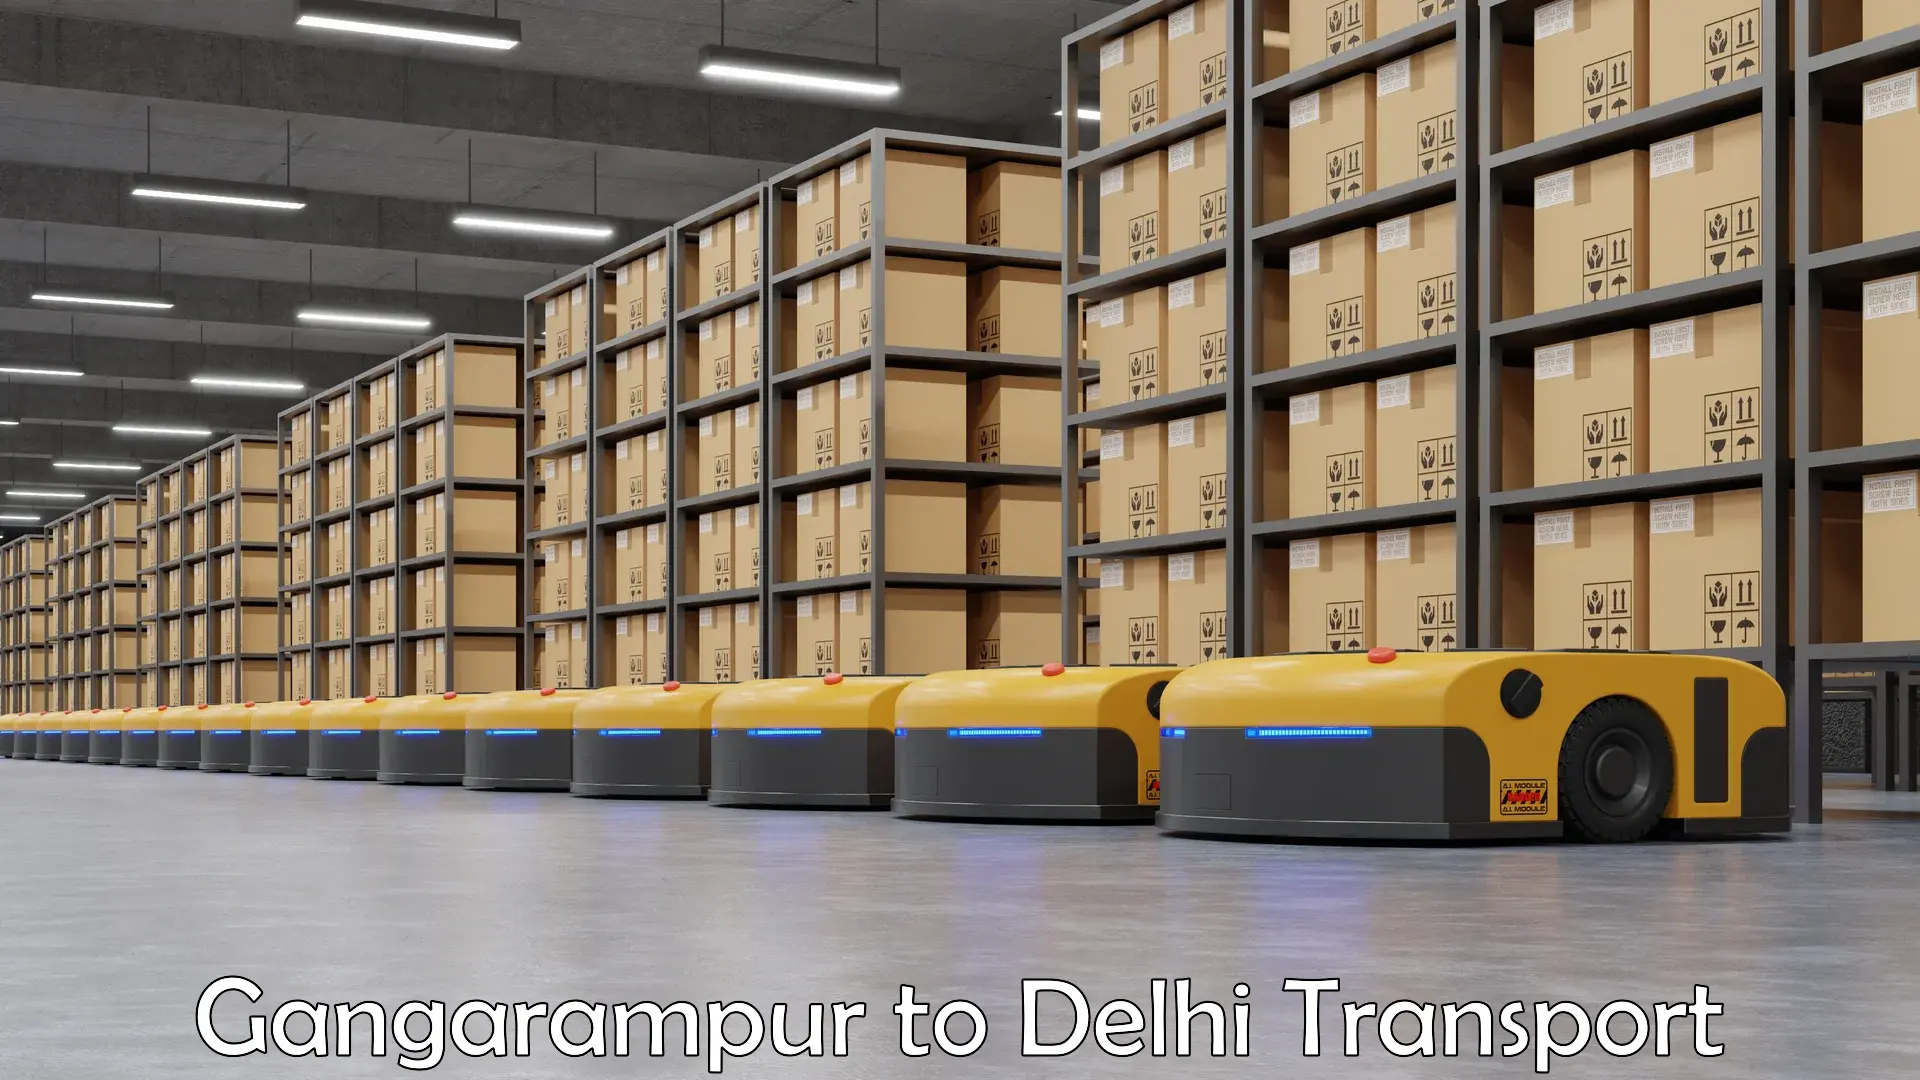 Interstate transport services Gangarampur to IIT Delhi